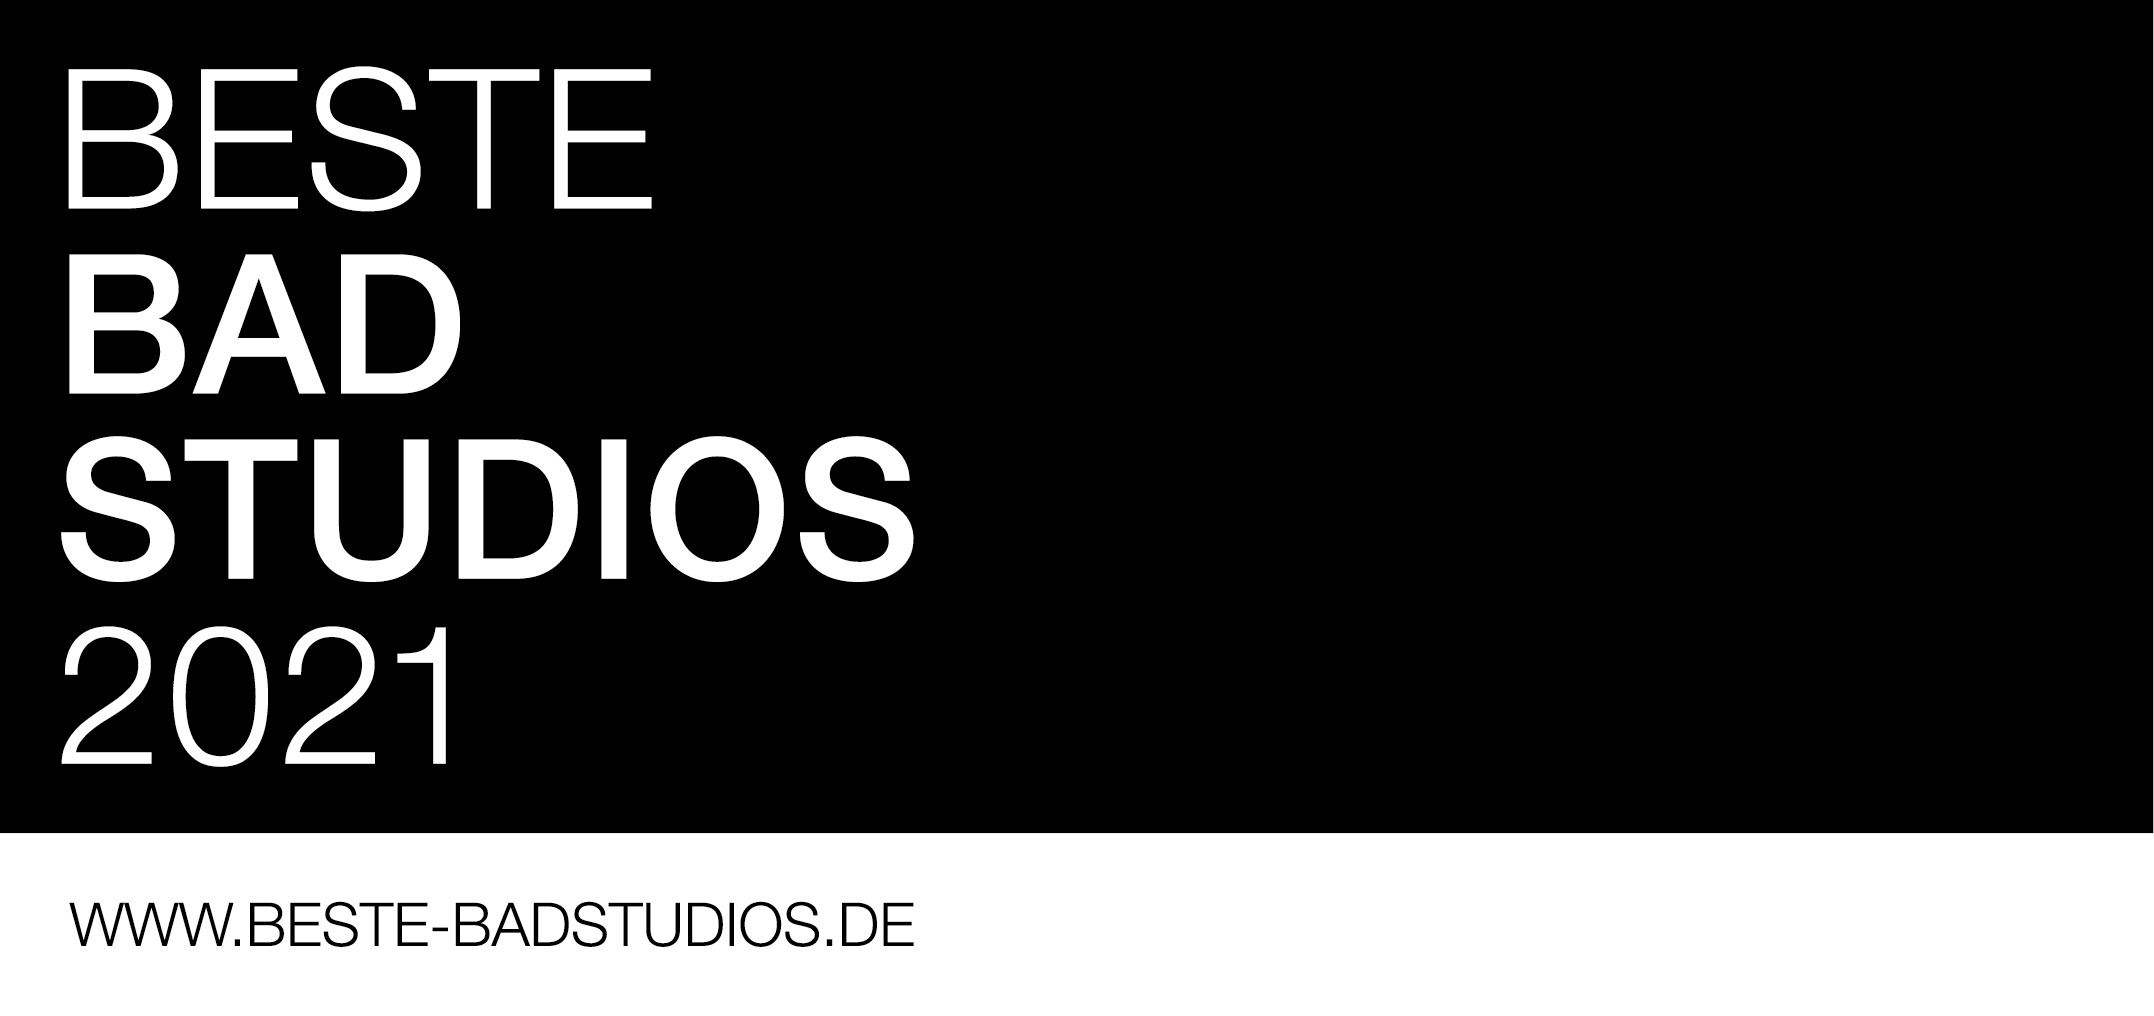 Beste Bad Studios